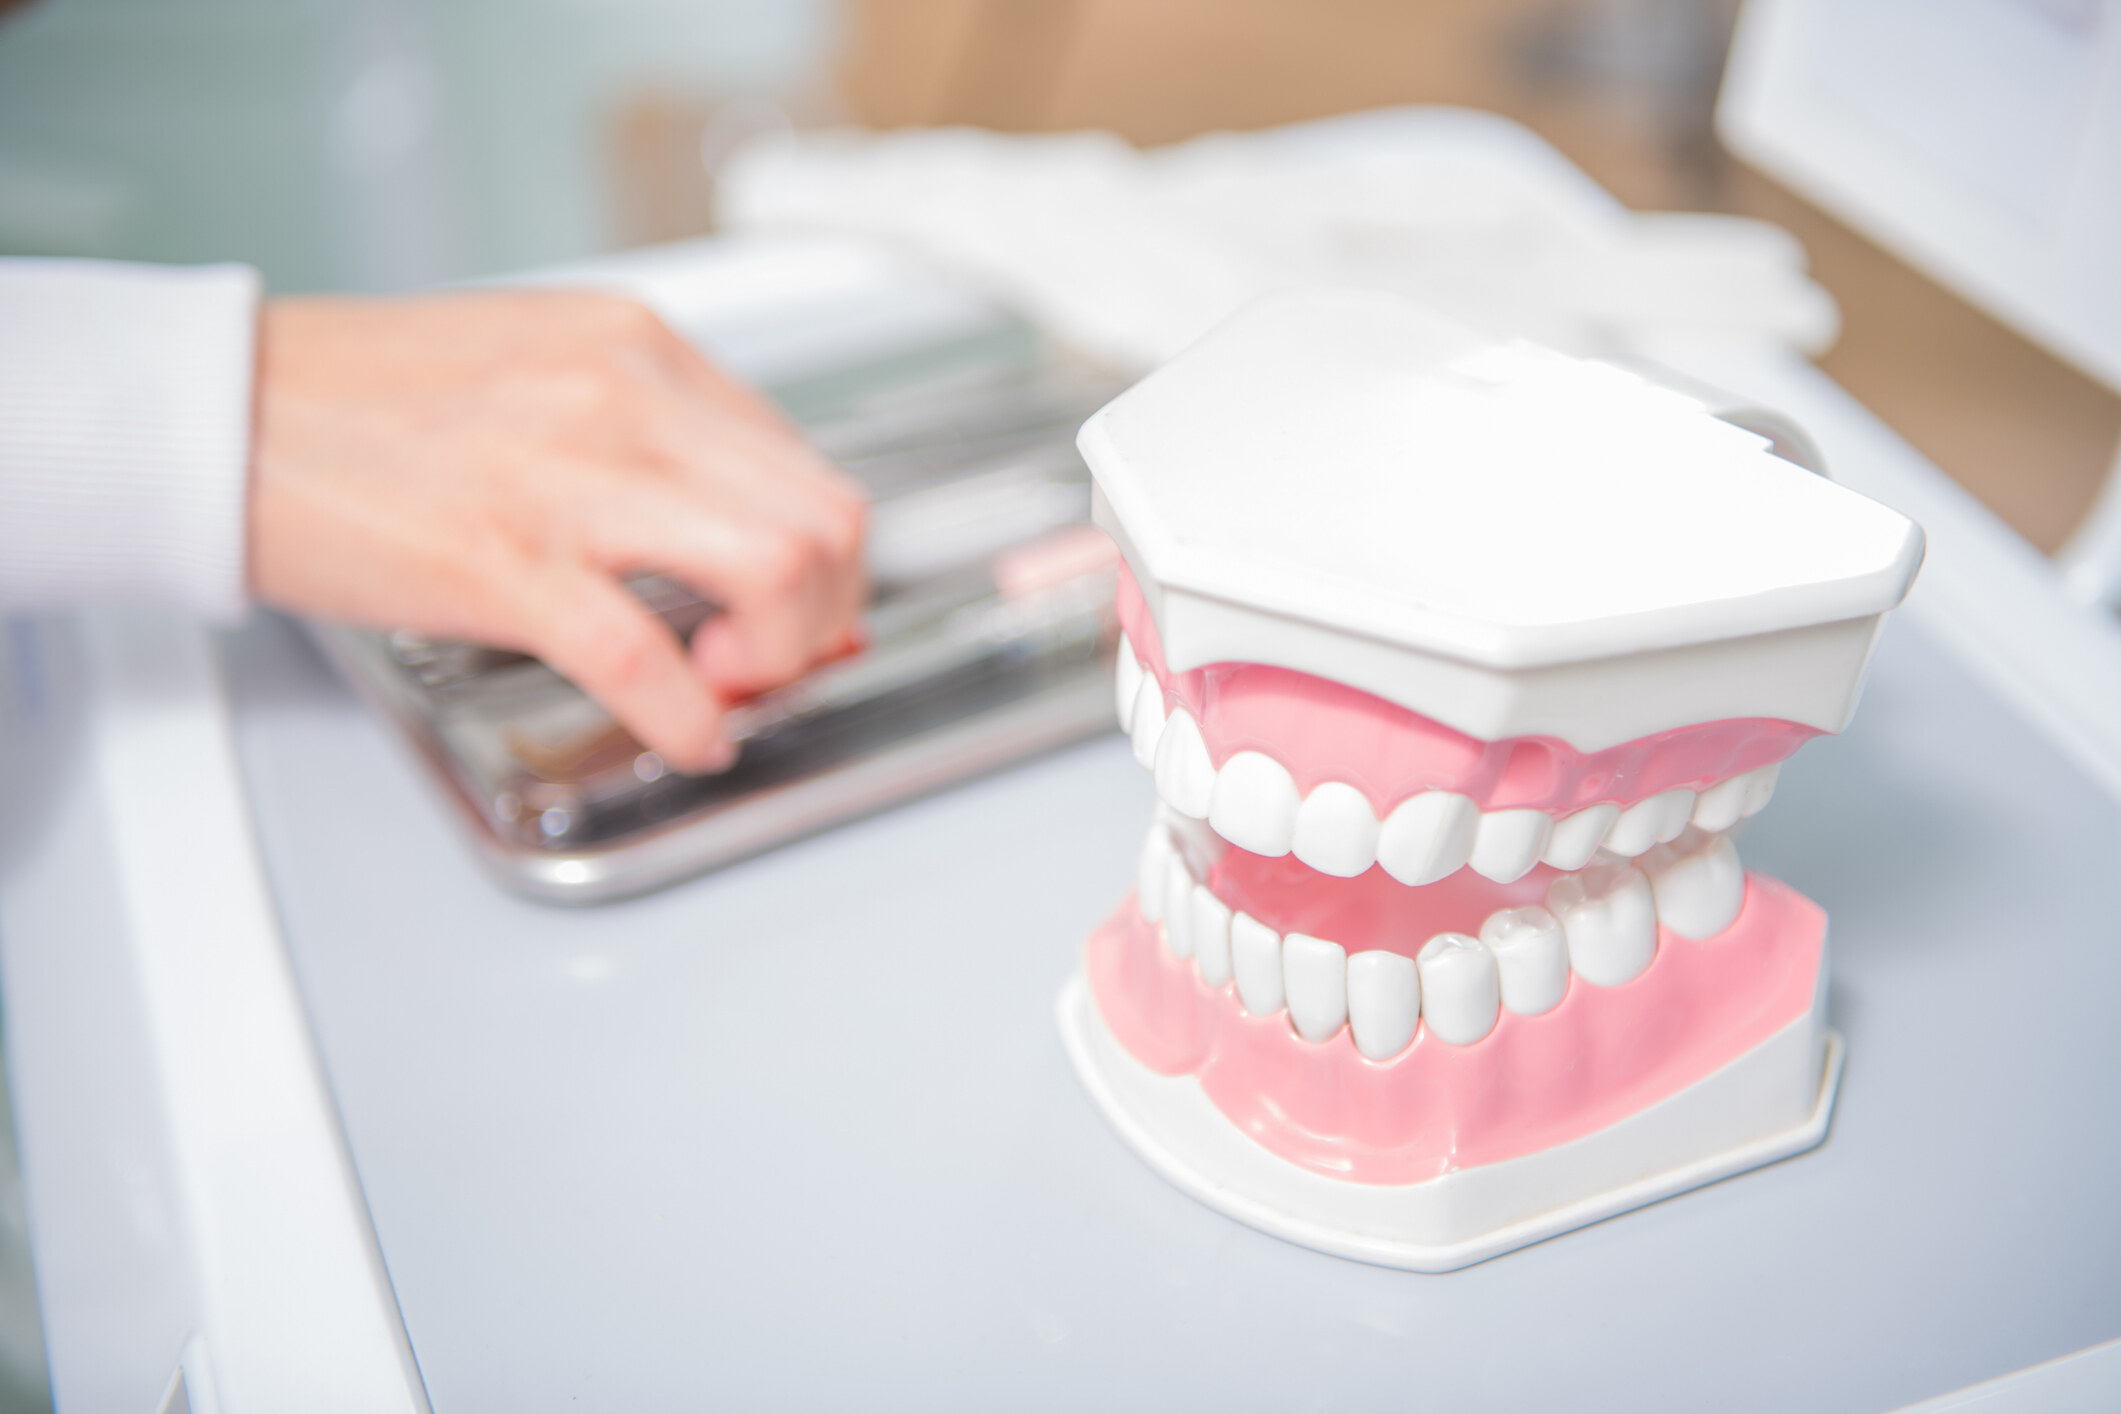 敏感牙齒｜牙醫教3招改善牙肉酸軟＋3大成因/症狀/治療方法